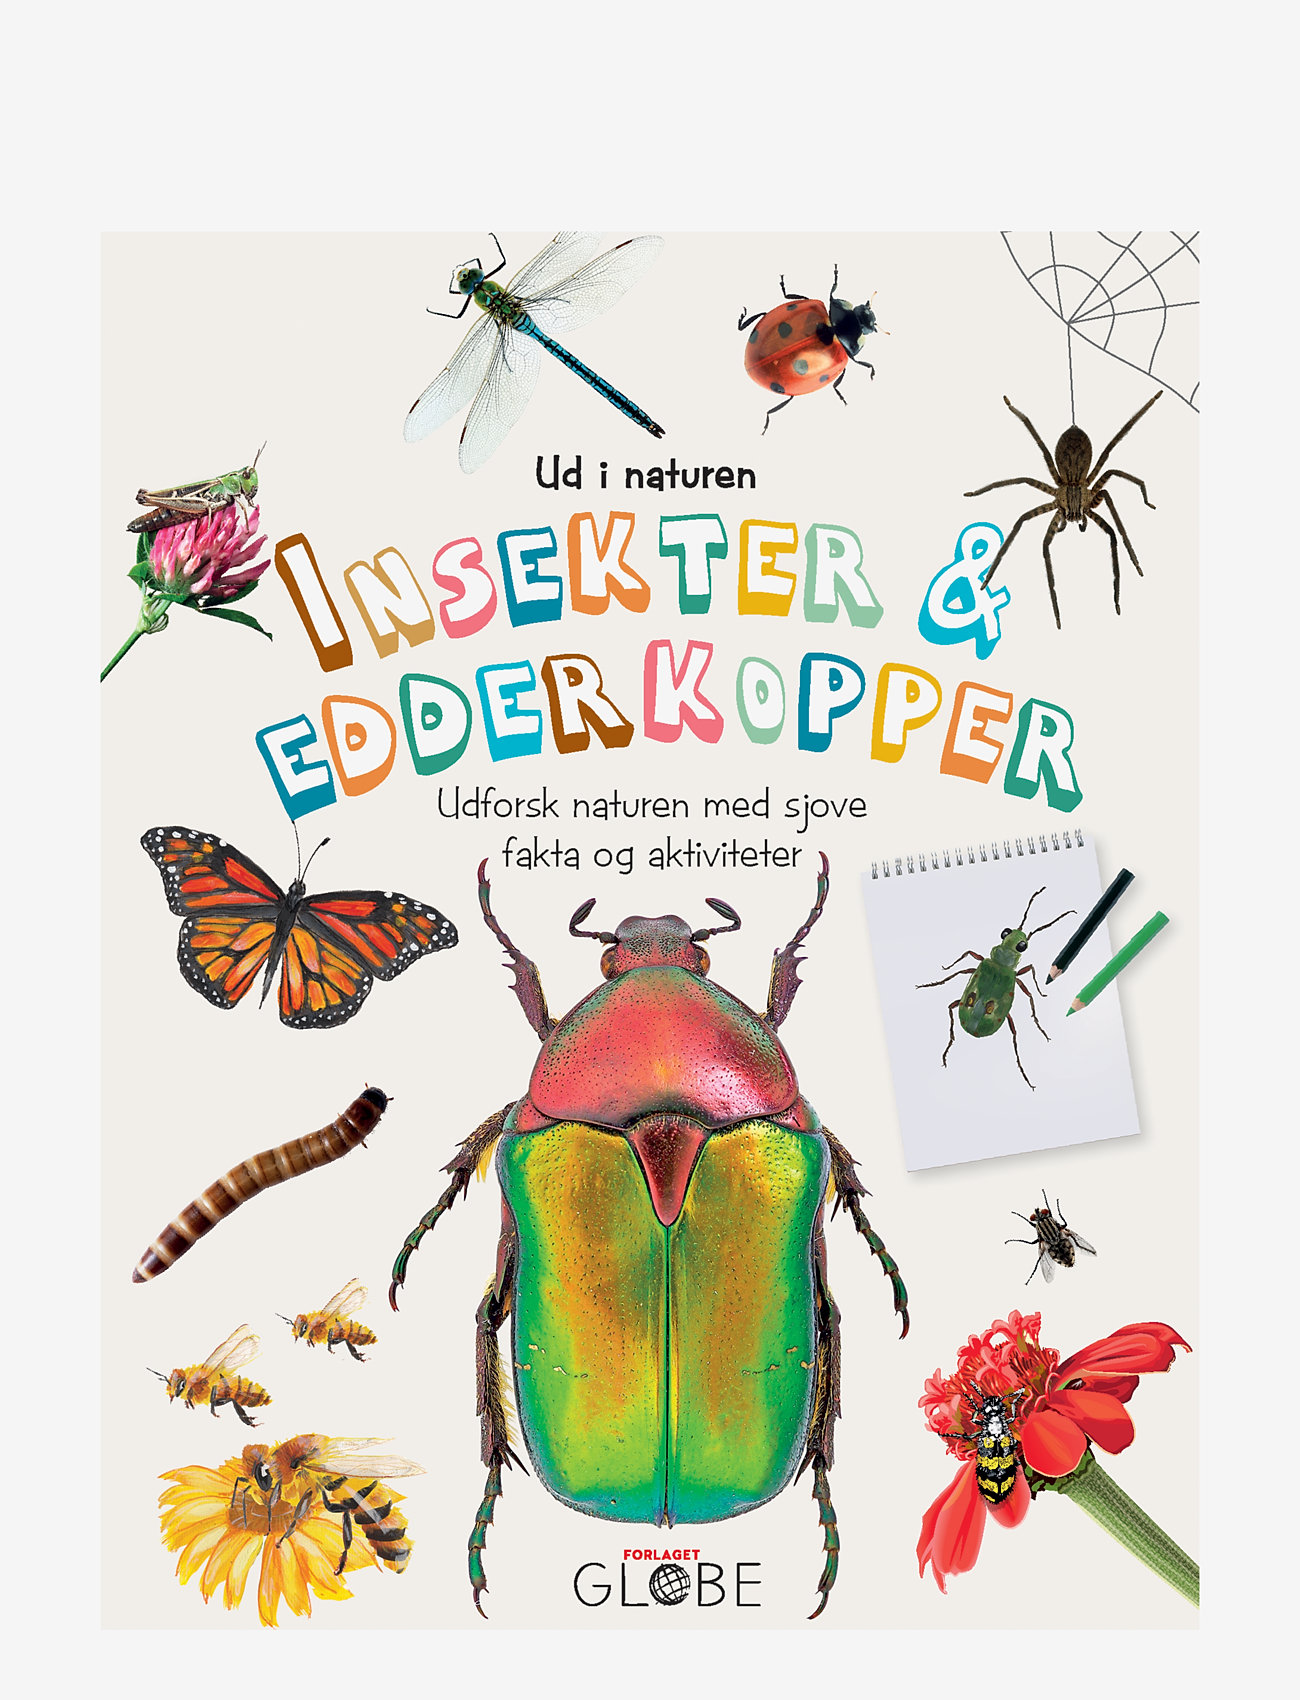 GLOBE - Ud i naturen Insekter & edderkopper - die niedrigsten preise - children's book - 0